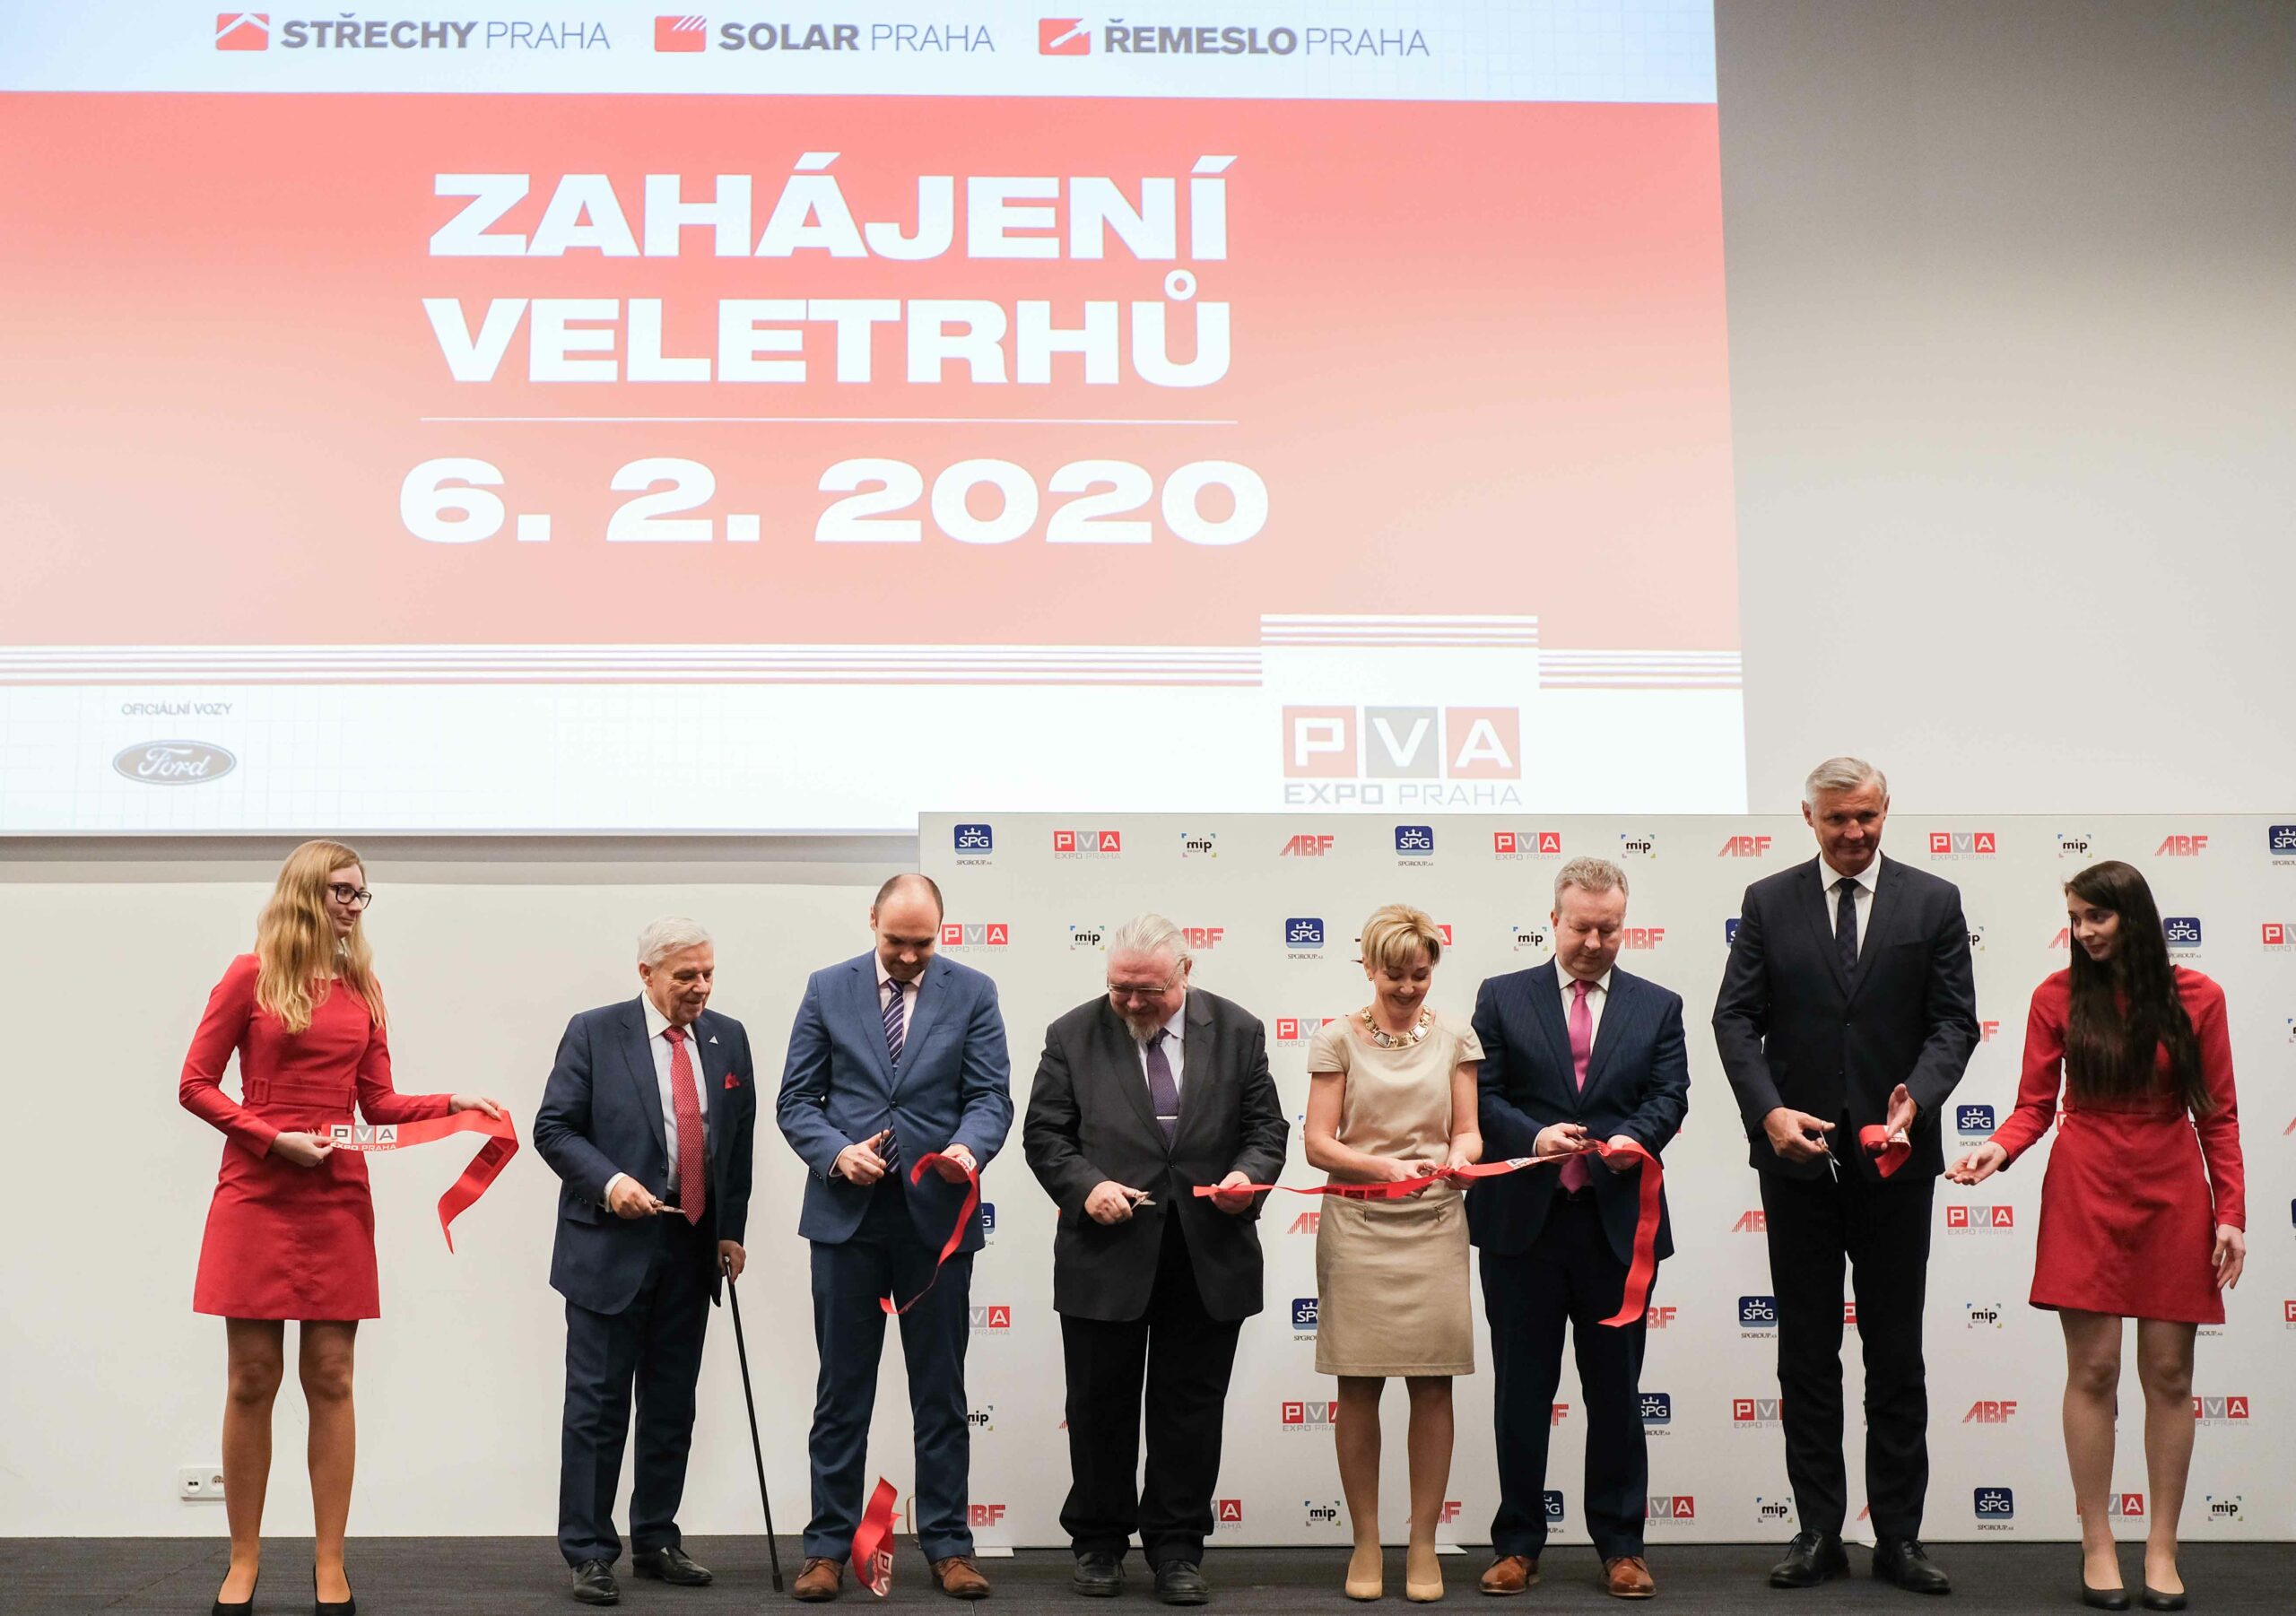 Zahájení veletrhu Střechy Praha 2020